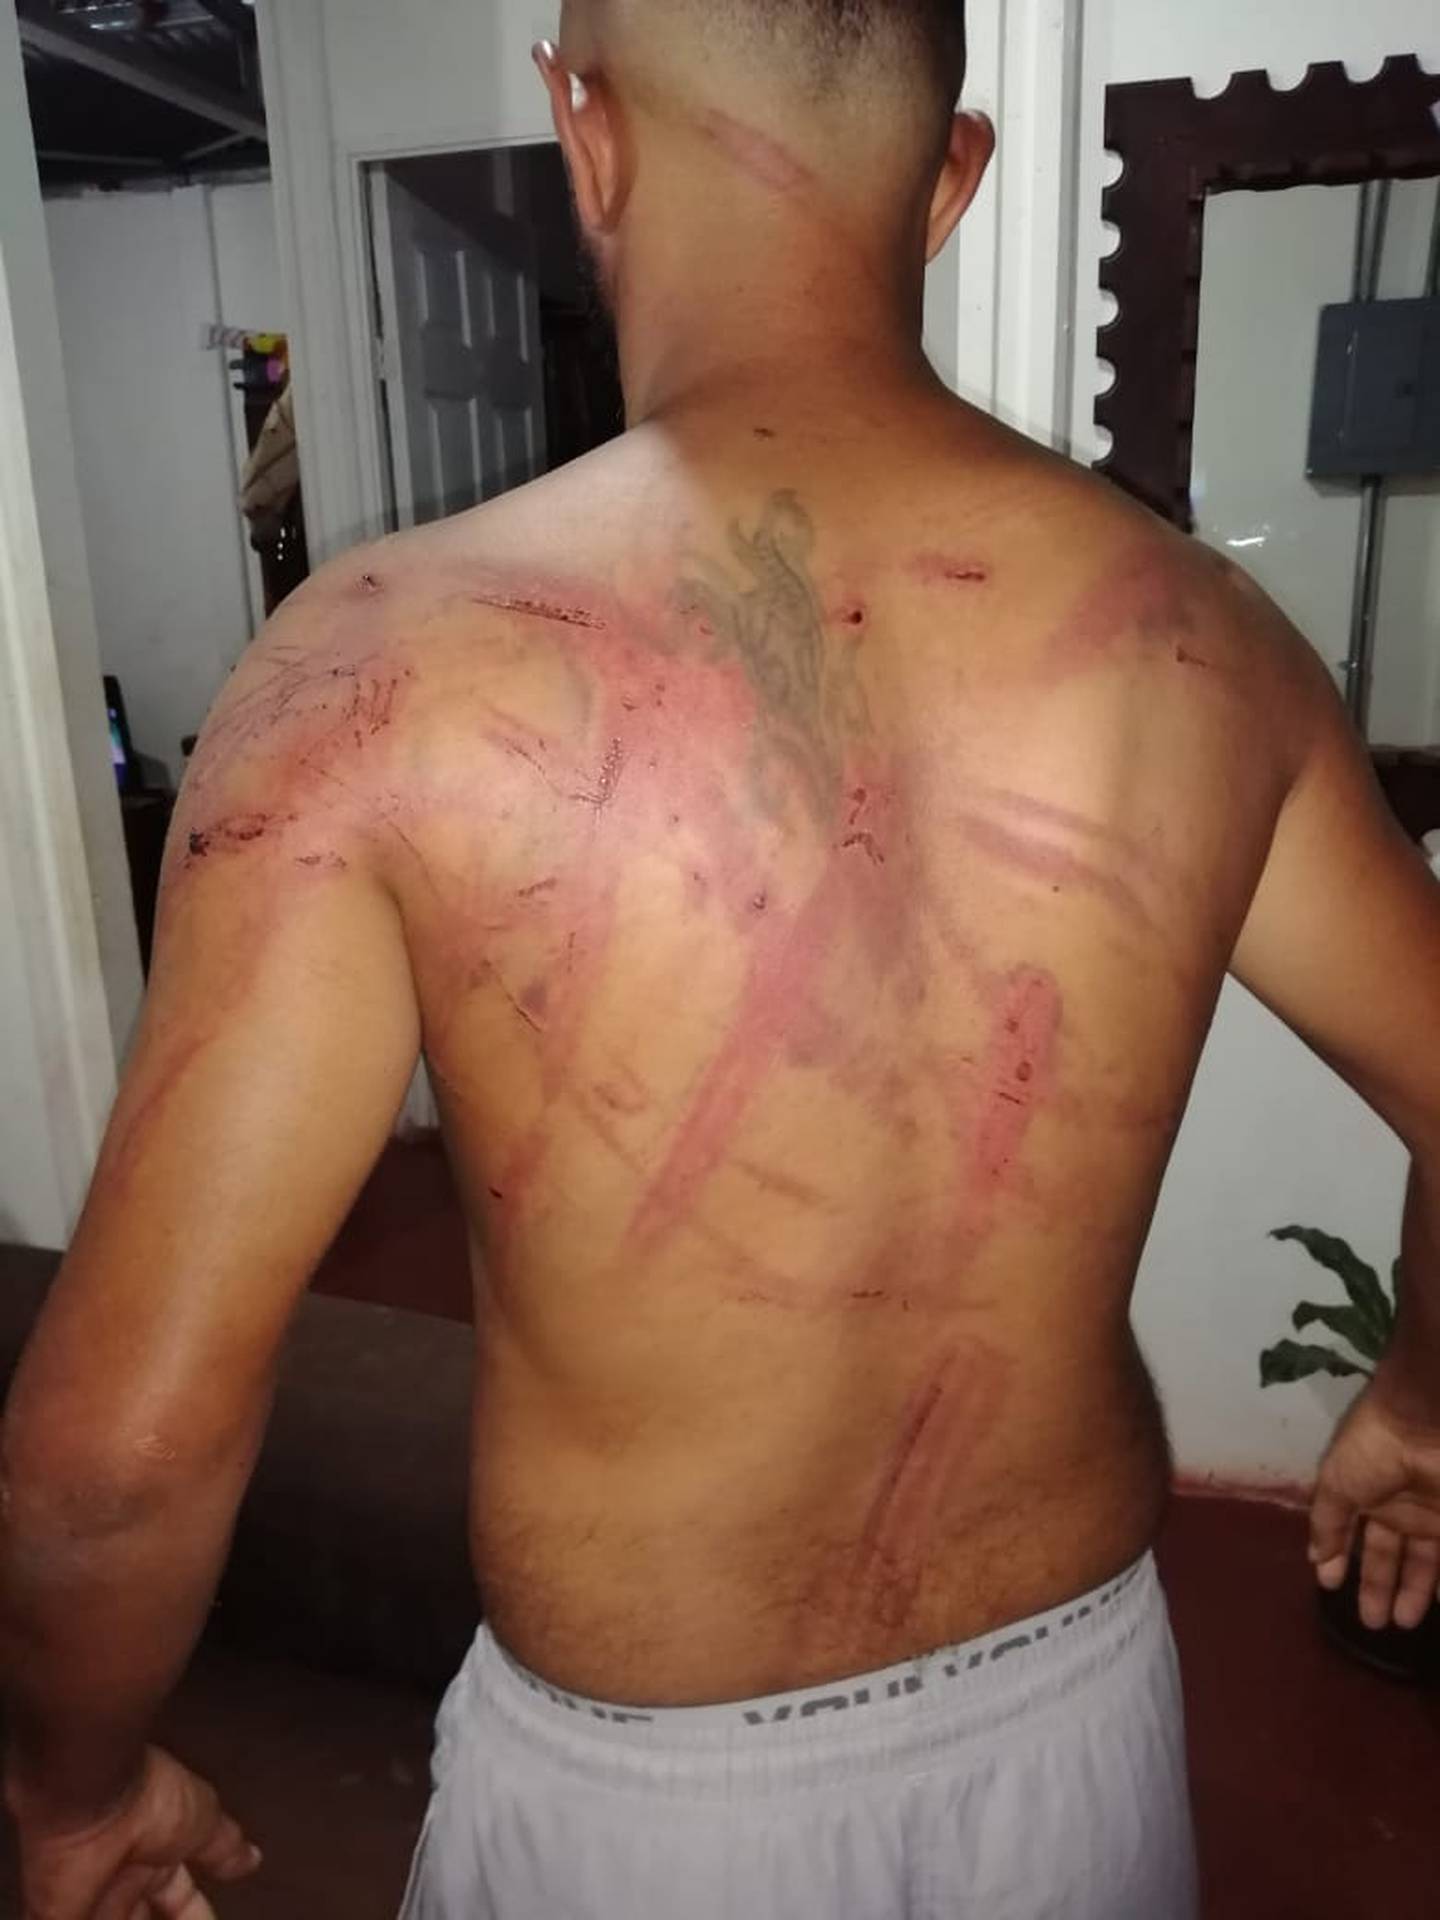 Joven denuncia que atacado por grupo de "garroteros" por delito que no cometió. Foto suministrada por Edgar Chinchilla.